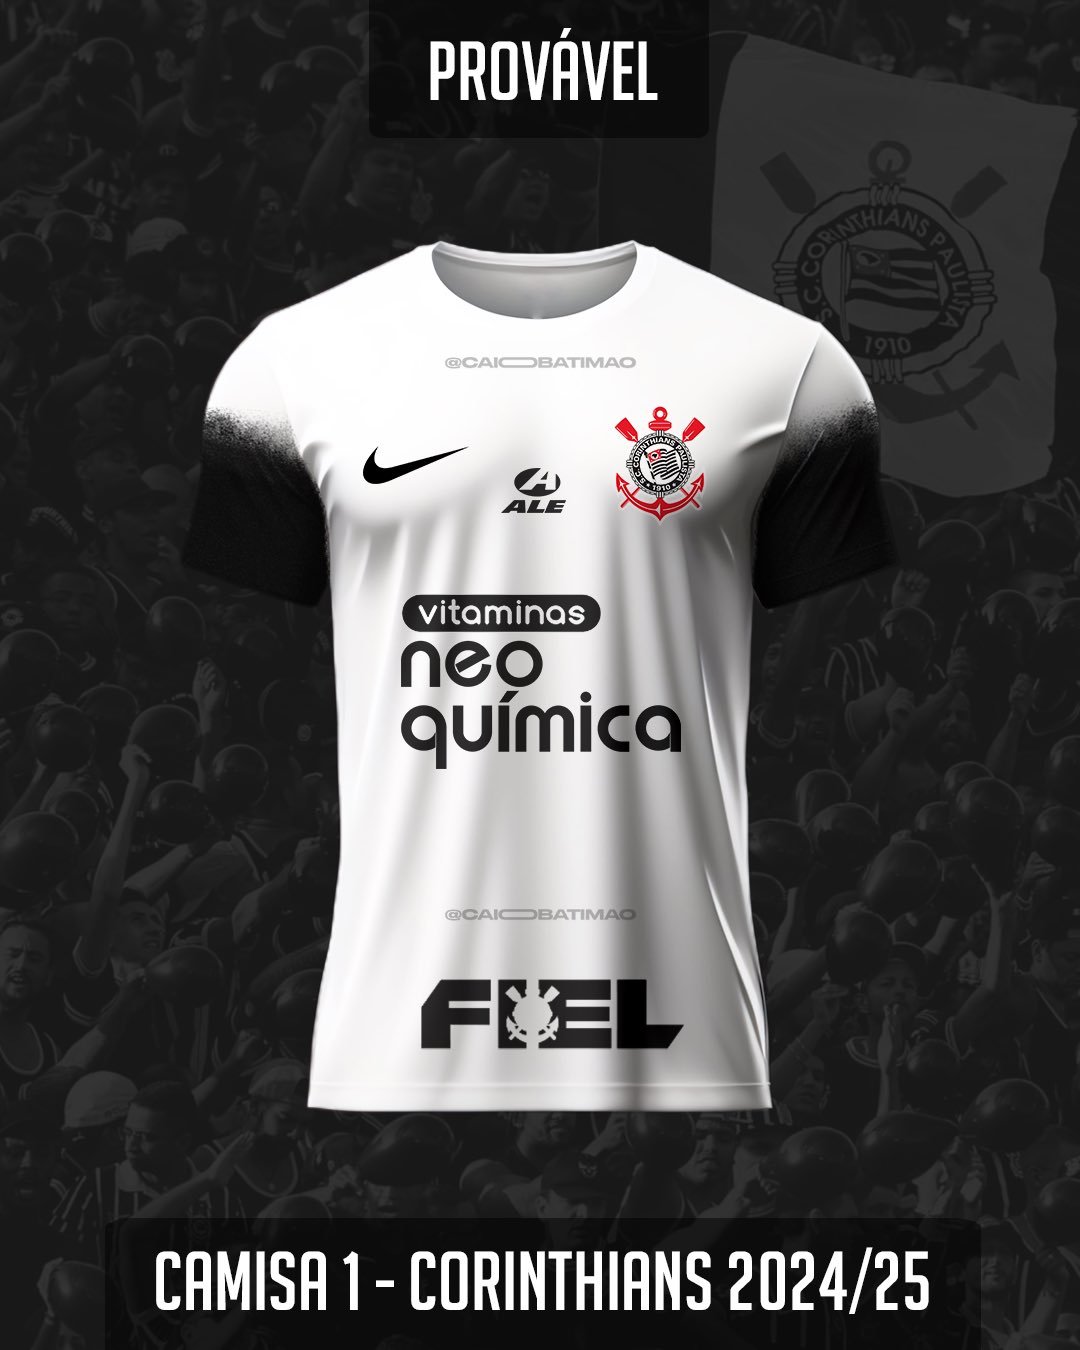 Jornalista divulga provável nova camisa do Corinthians para 2024